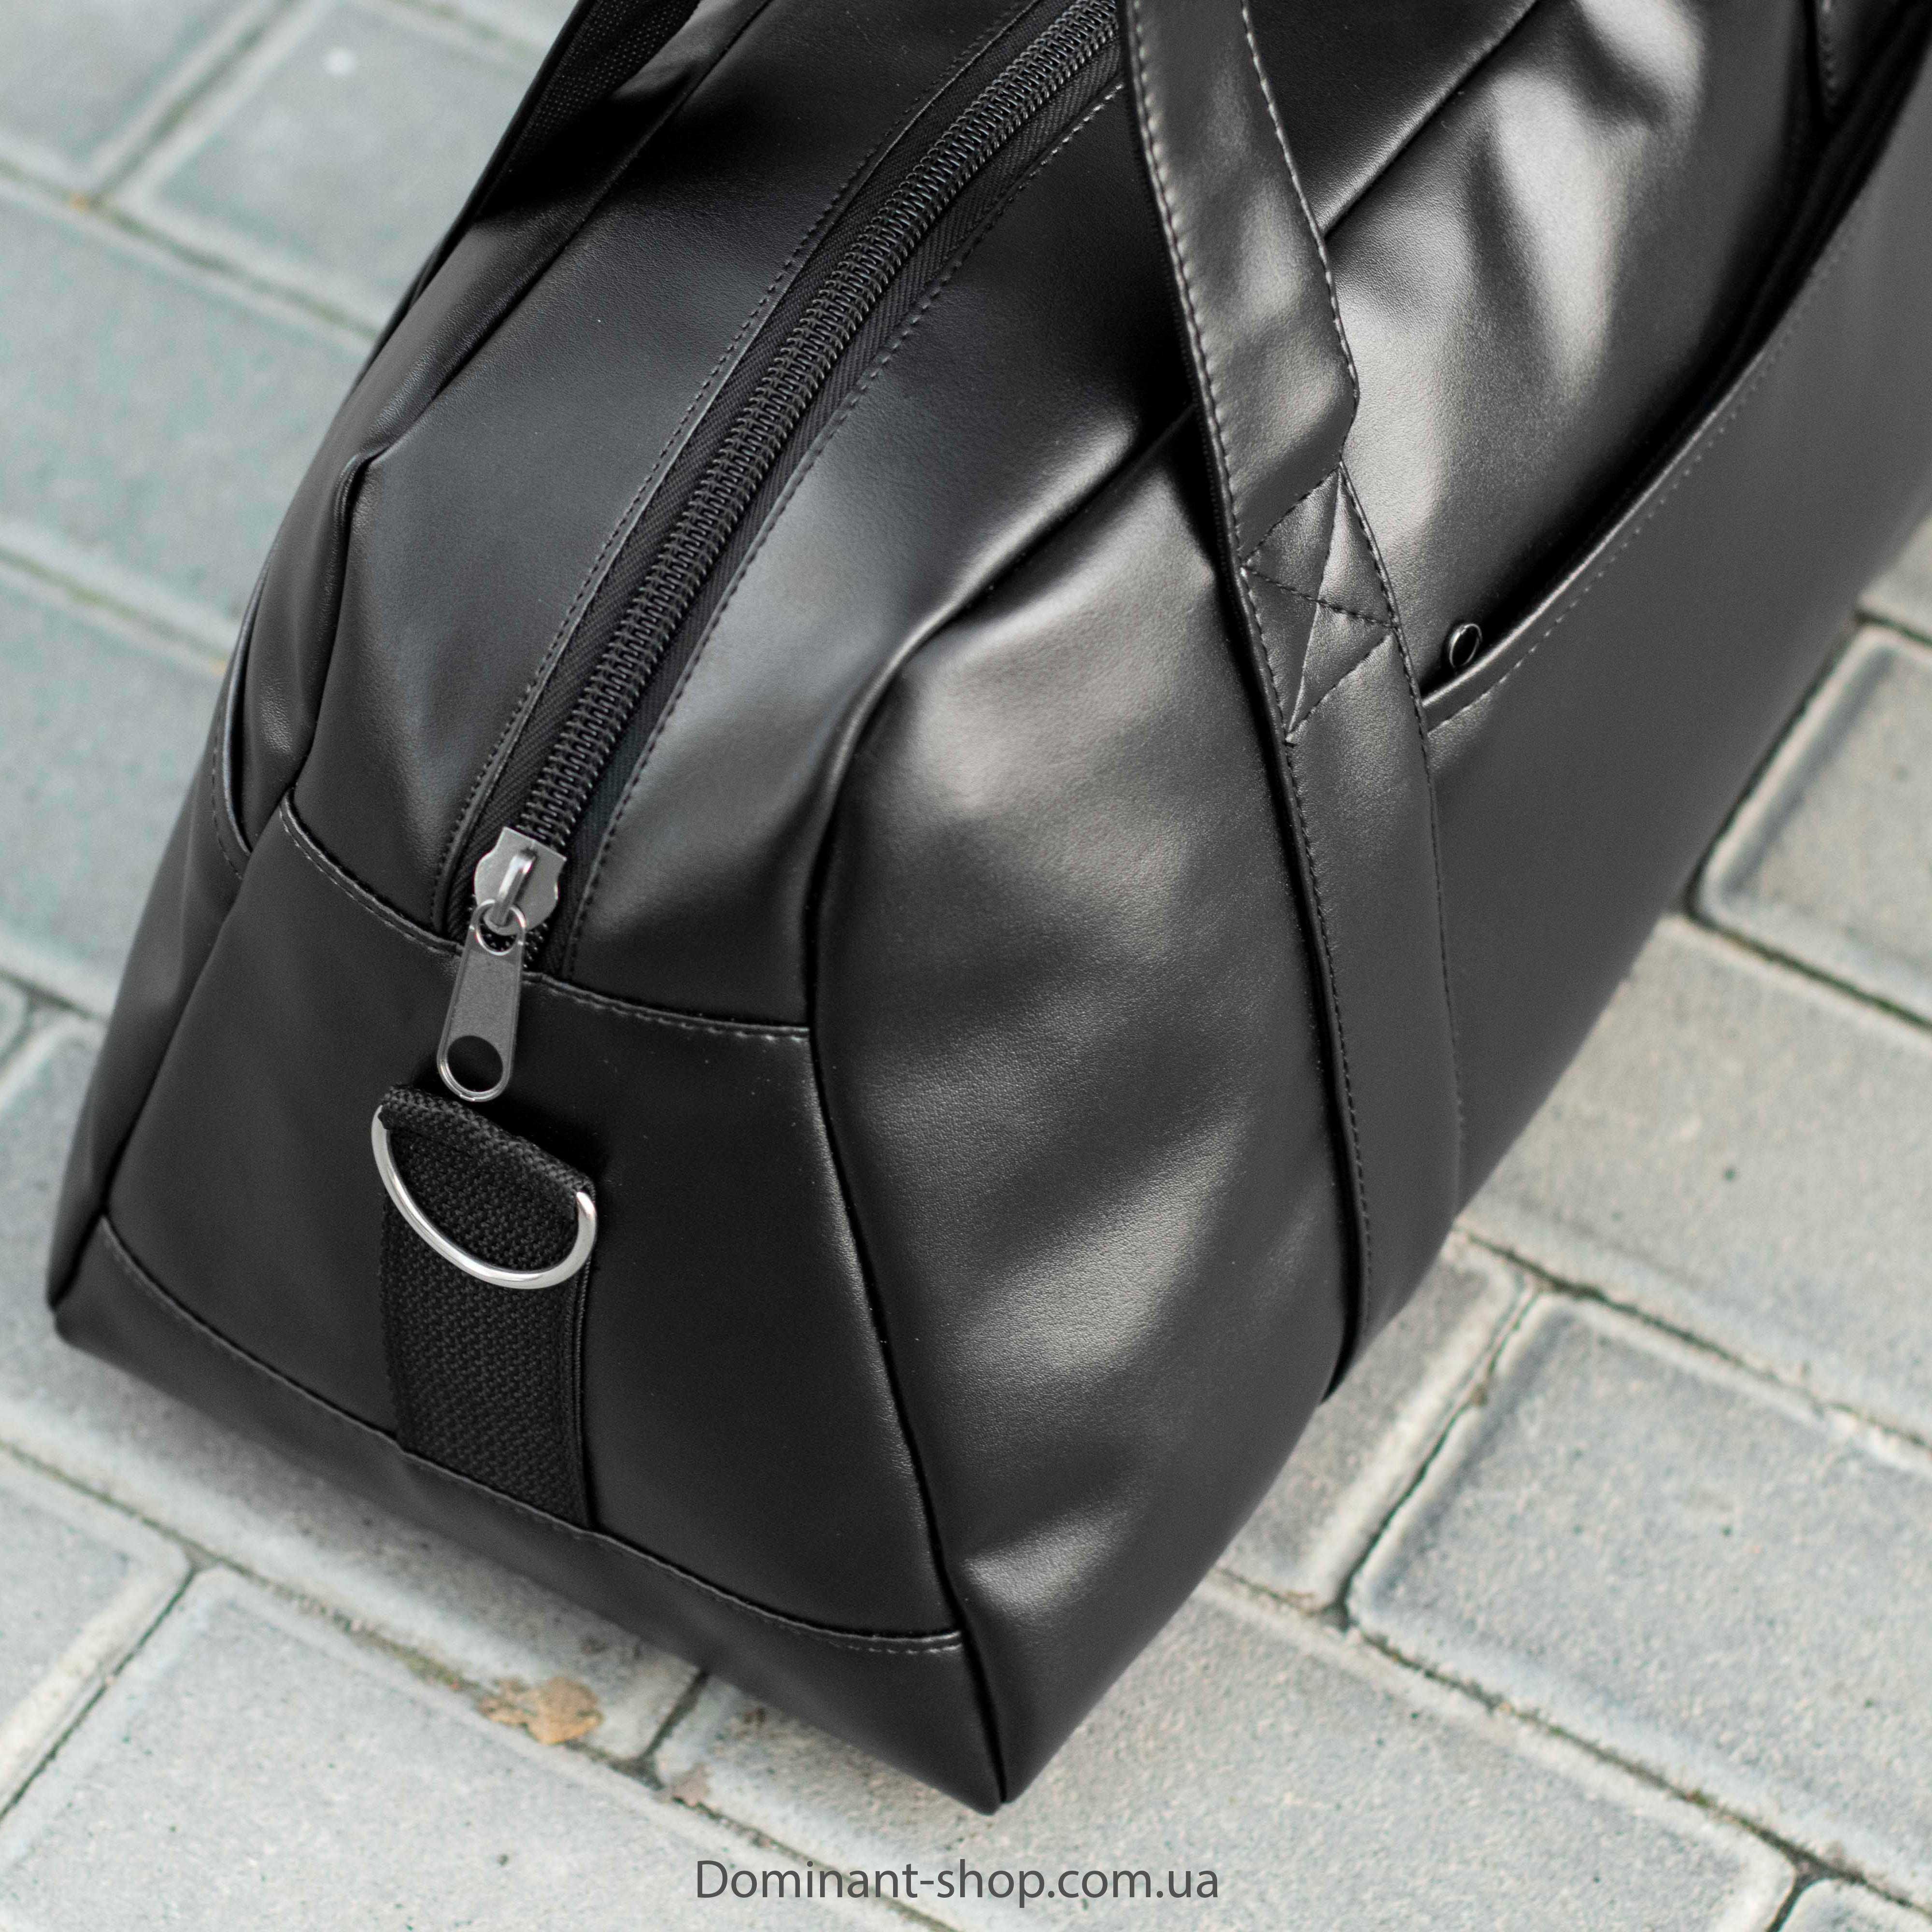 Дорожная сумка Urban черная из эко кожи на 24 л